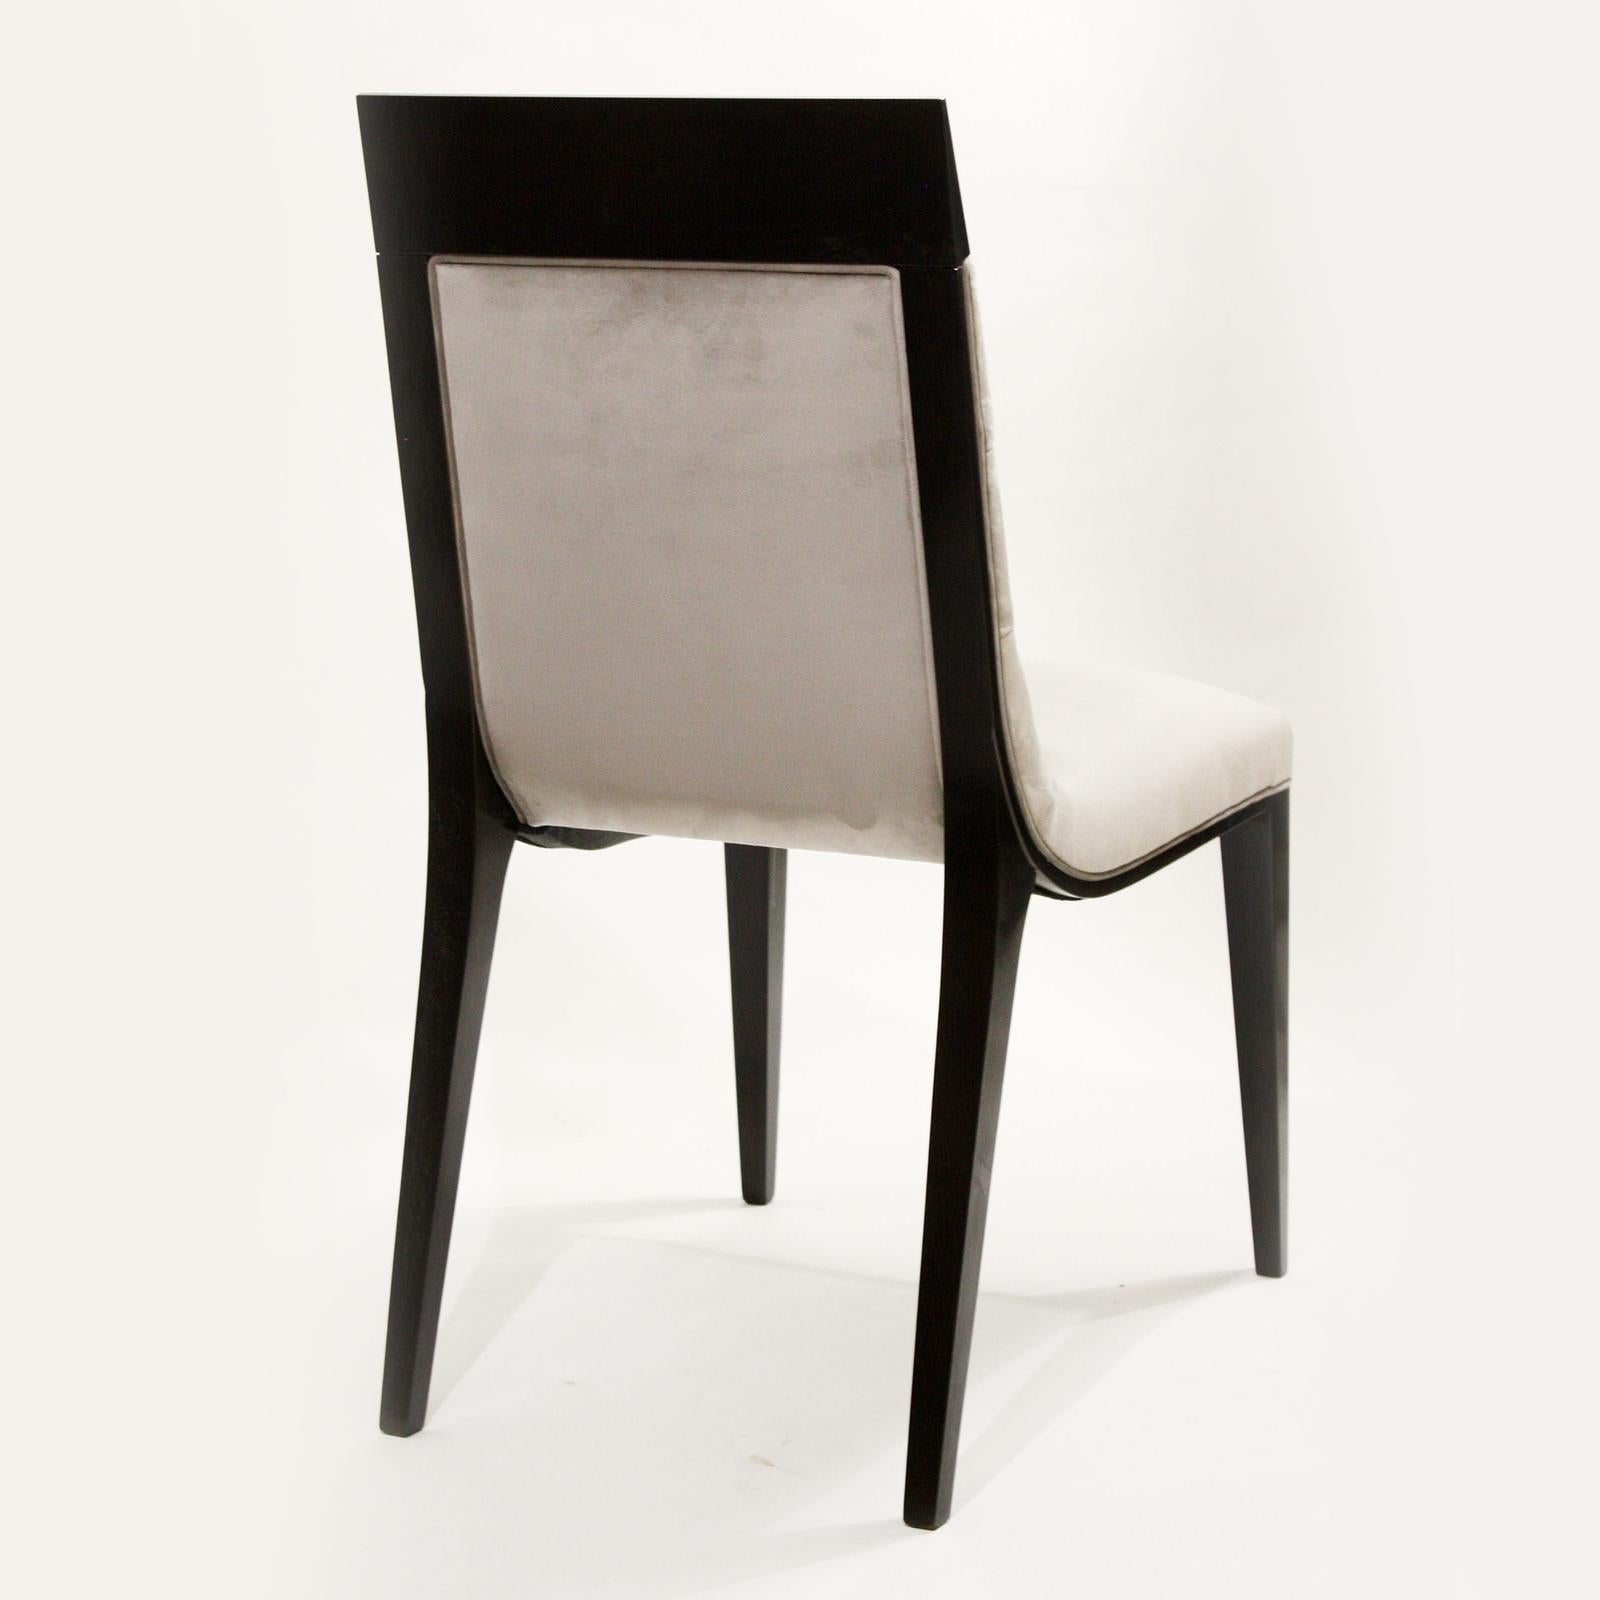 Ein fabelhafter und zeitgenössischer Stil kennzeichnet diesen Stuhl der Collection'S mit einem prächtig gepolsterten Design auf der hohen Rückenlehne. Der Stuhl ist eine reizvolle Ergänzung für jede Einrichtung mit einem eleganten und